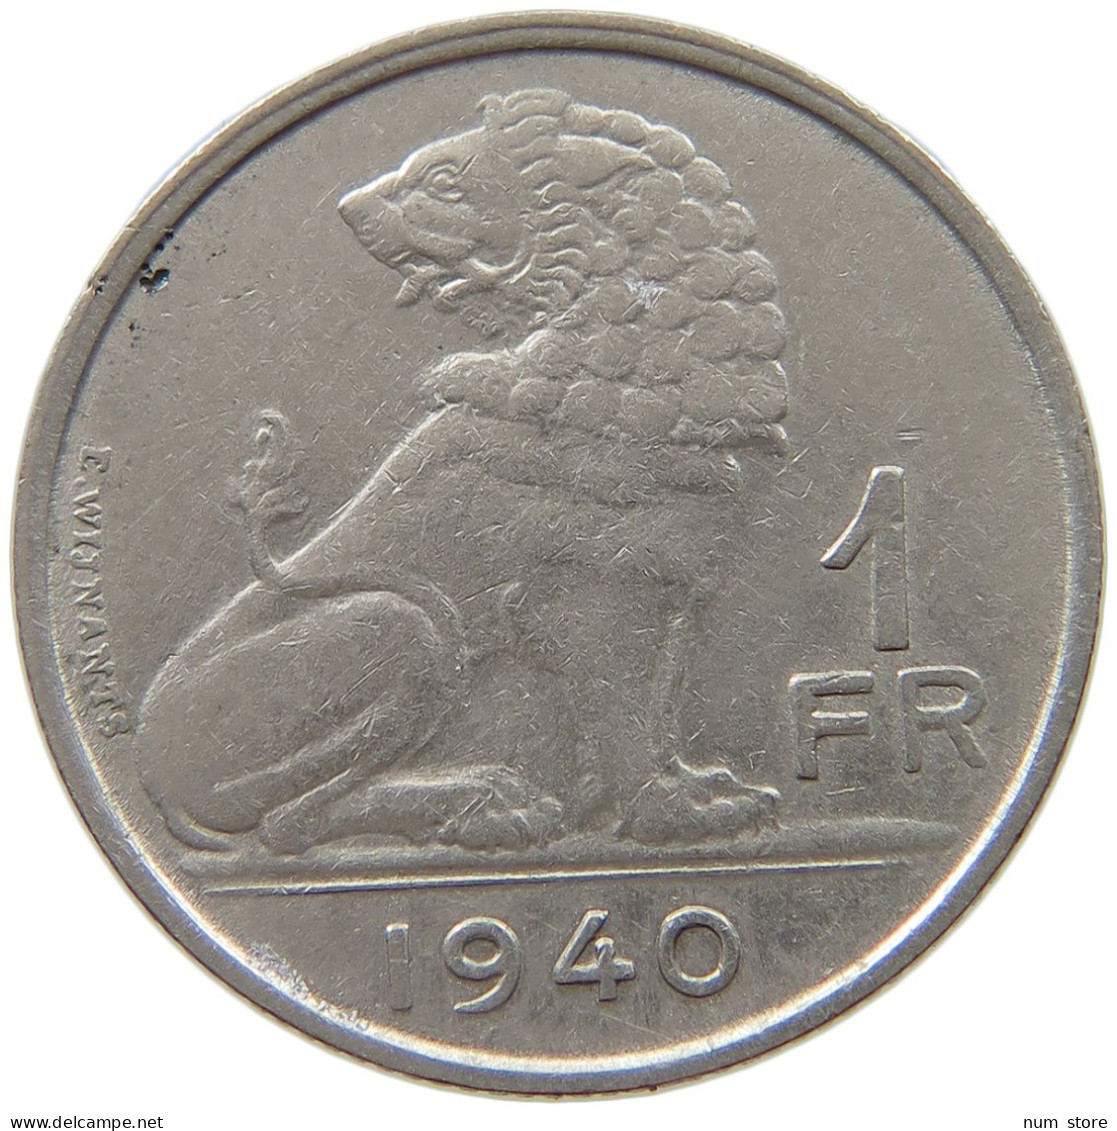 BELGIUM 1 FRANC 1940 #a017 0443 - 1 Franc